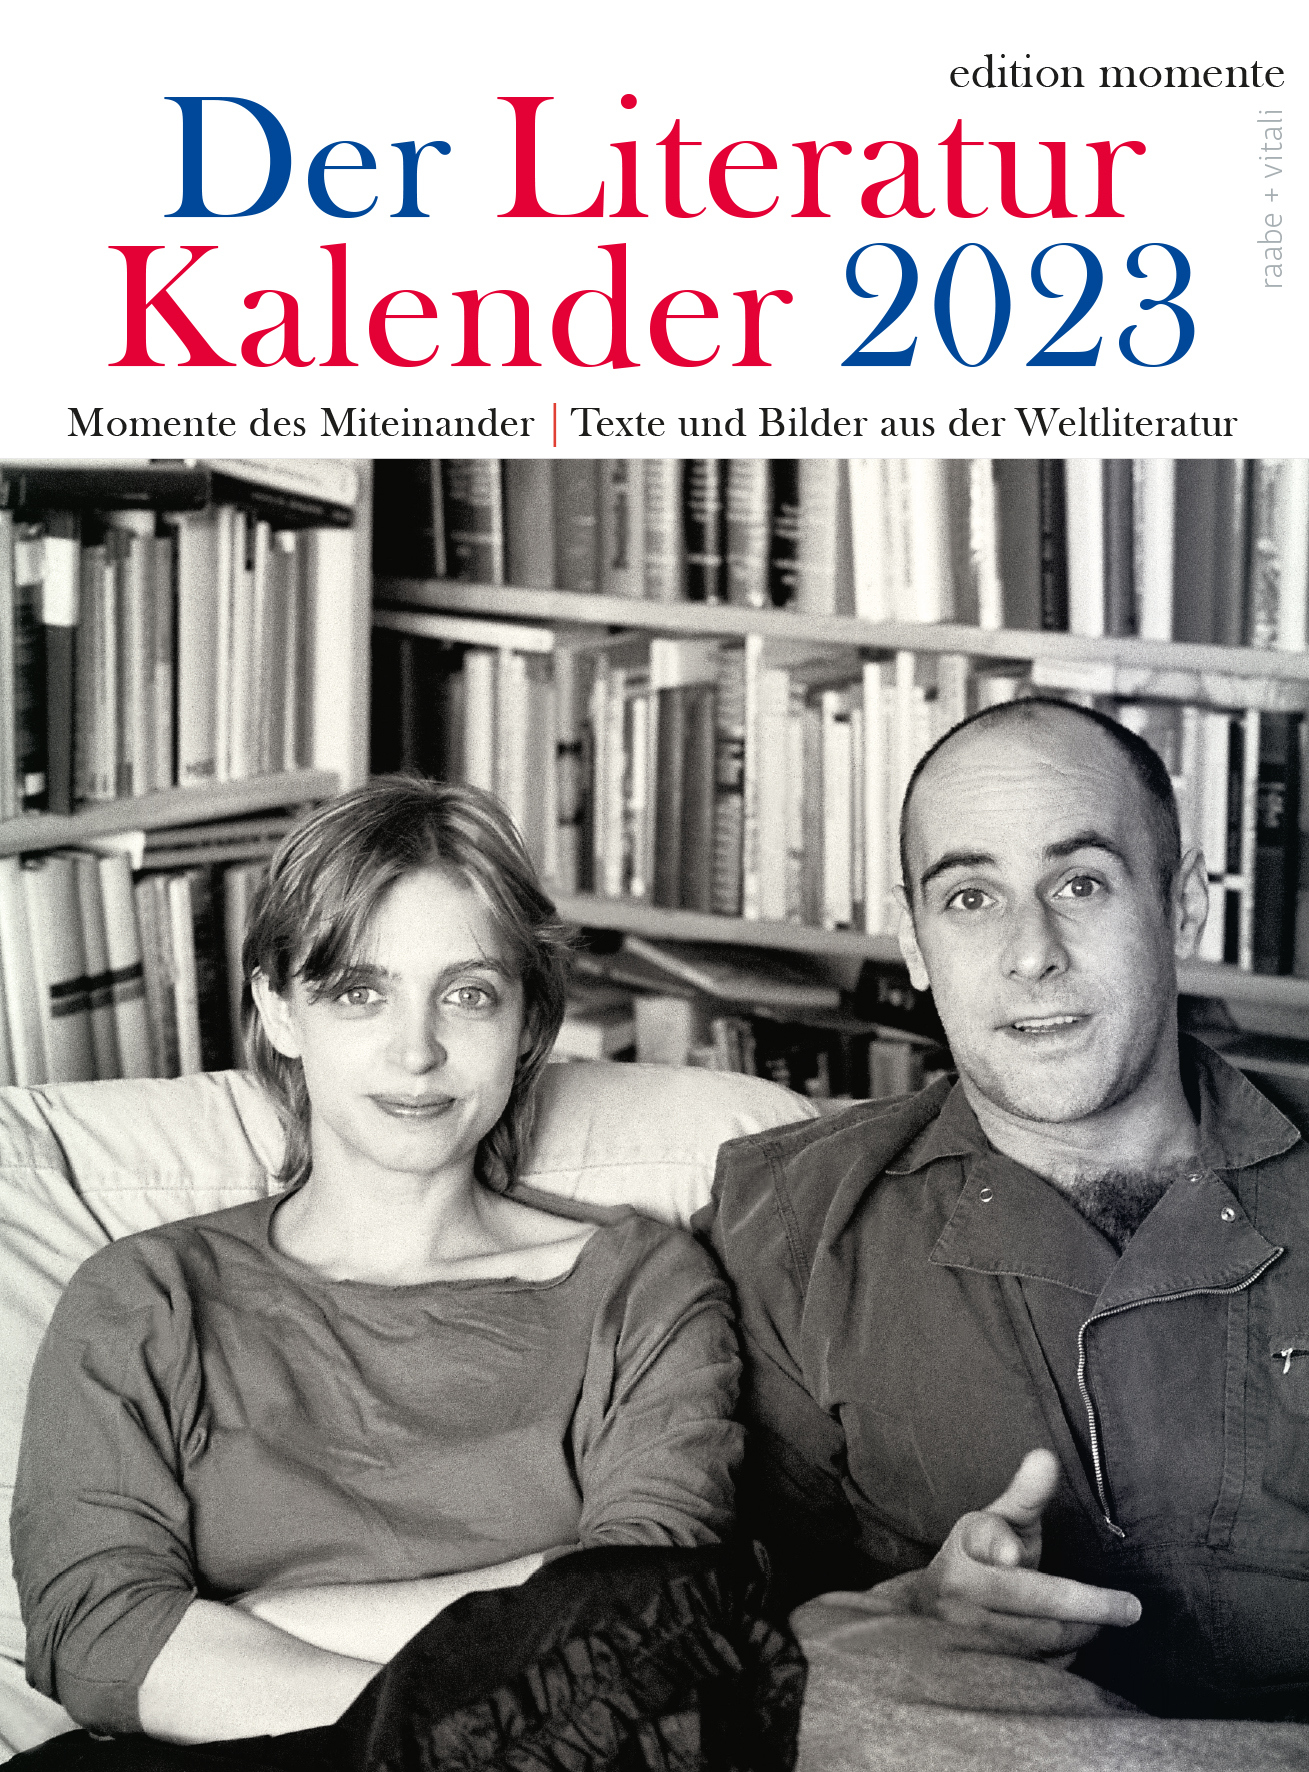 Kalender 2021: Autoren Hörbücher Werke Buchtipps Literatur 